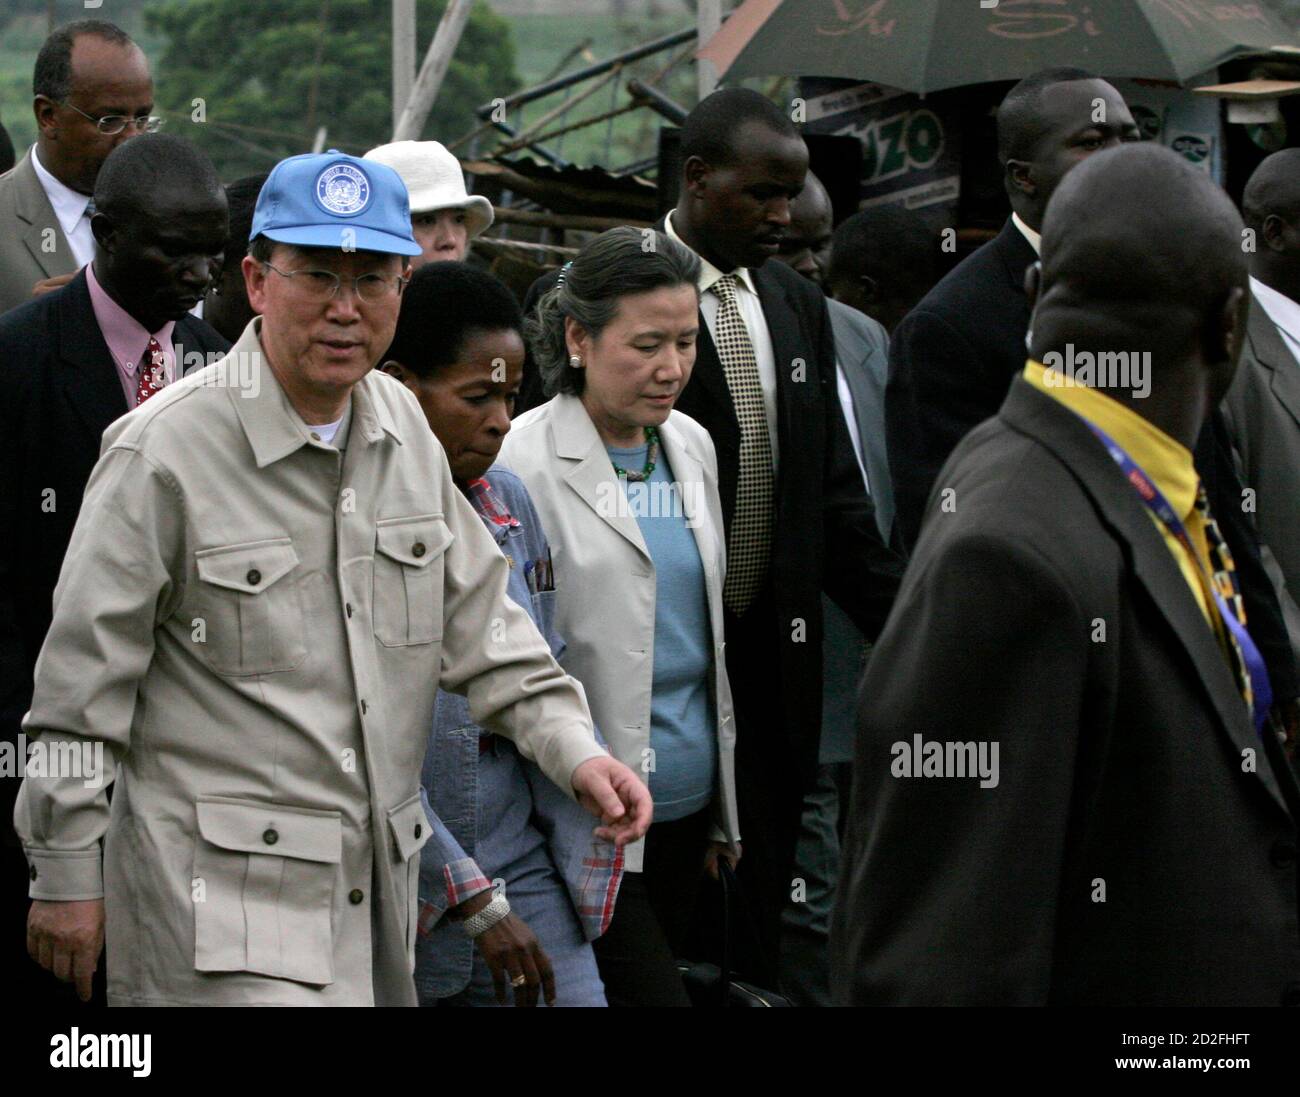 Il Segretario Generale delle Nazioni Unite Ban Ki-Moon (L), il Direttore Esecutivo del programma delle colonie umane delle Nazioni Unite Anna Tibaijuka (2° L) e la moglie di Ban Yoo Soon-Taek (3° L) camminano durante una visita allo slum di Kibera, che ospita oltre 800,000 persone, nella capitale del Kenya Nairobi, 30 gennaio 2007. REUTERS/Thomas Mukoya (KENYA) Foto Stock